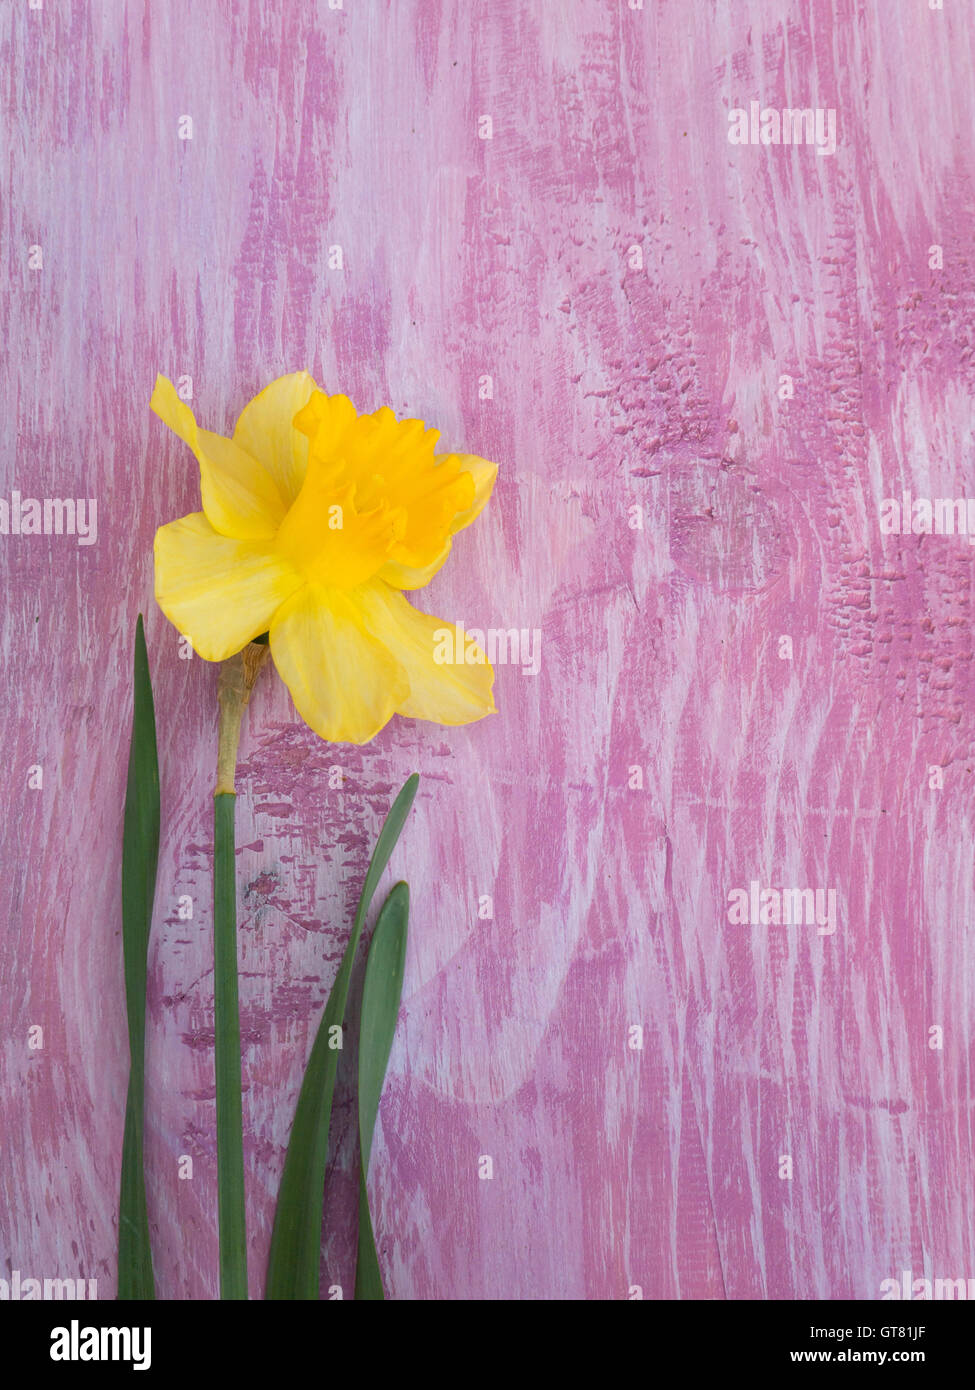 Narcisse jaune sur la planche de bois peint le violet Banque D'Images